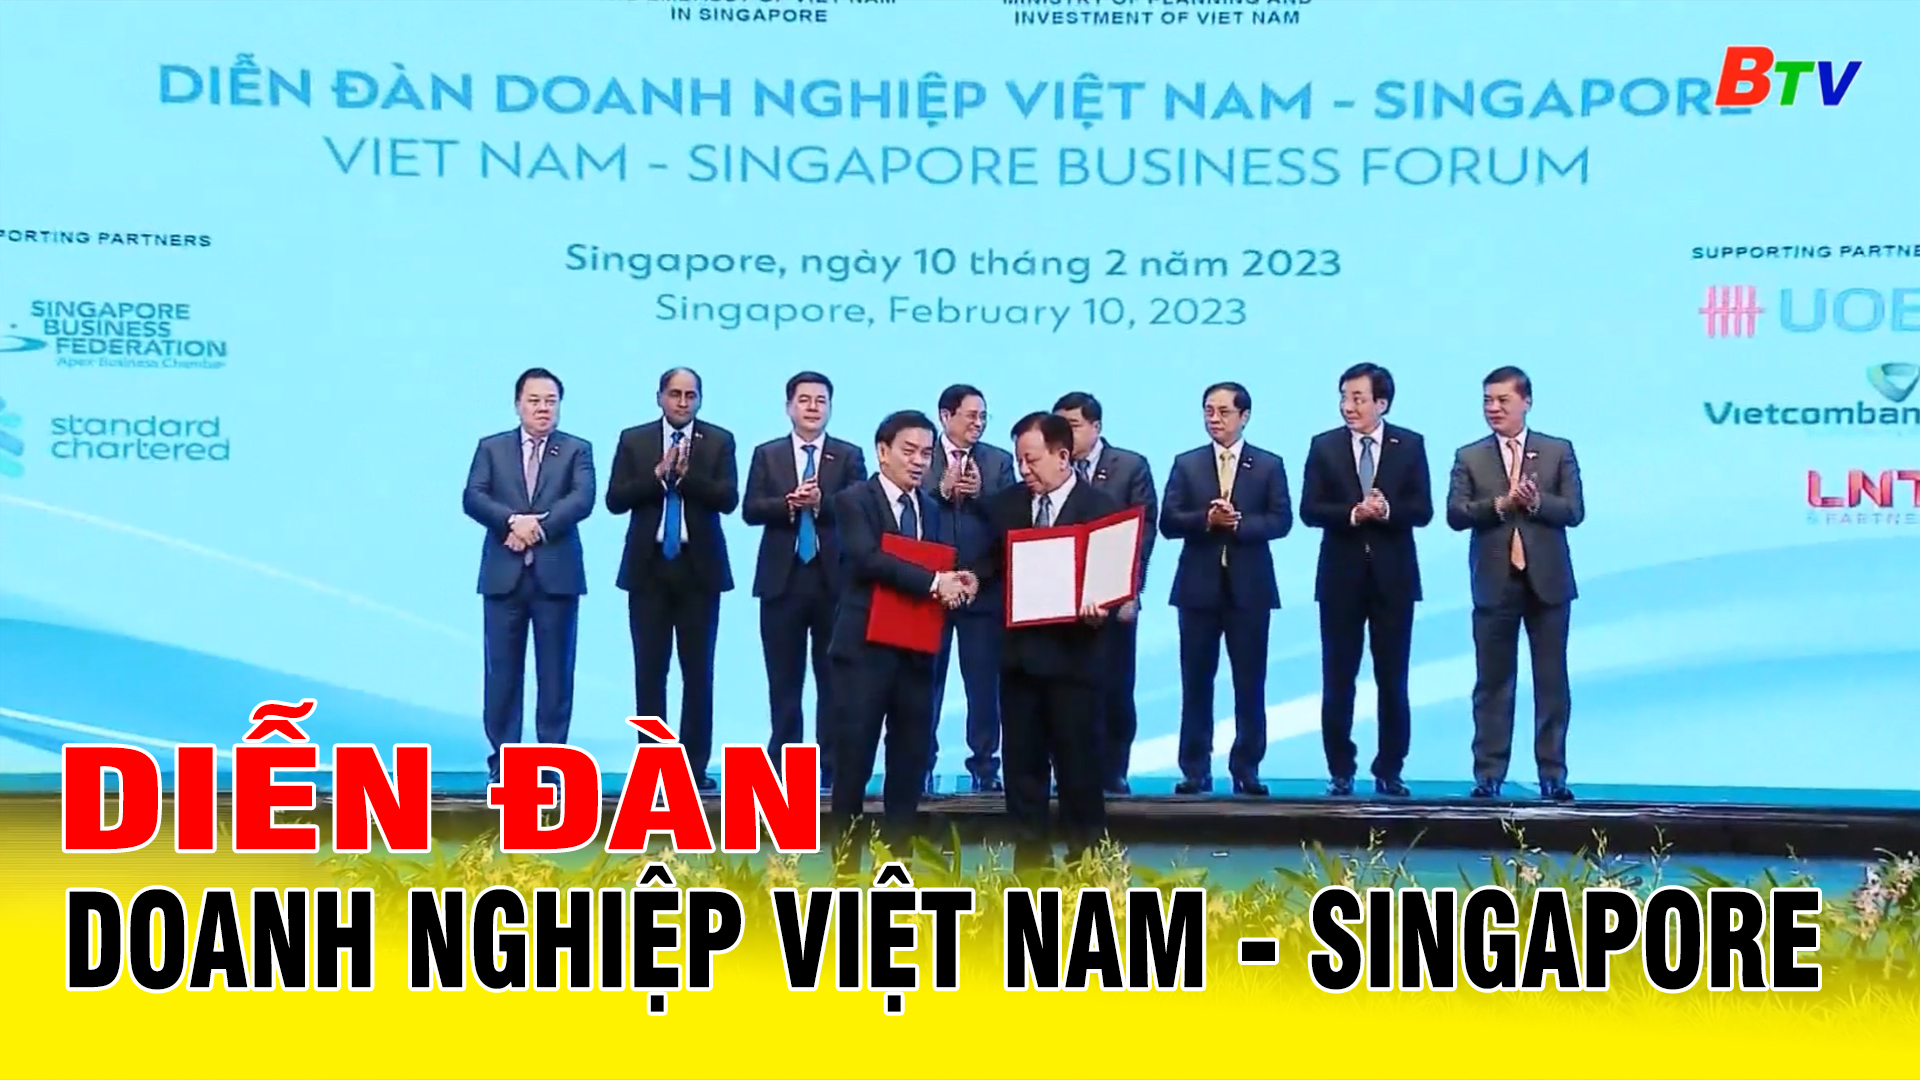 Diễn đàn doanh nghiệp Việt Nam - Singapore